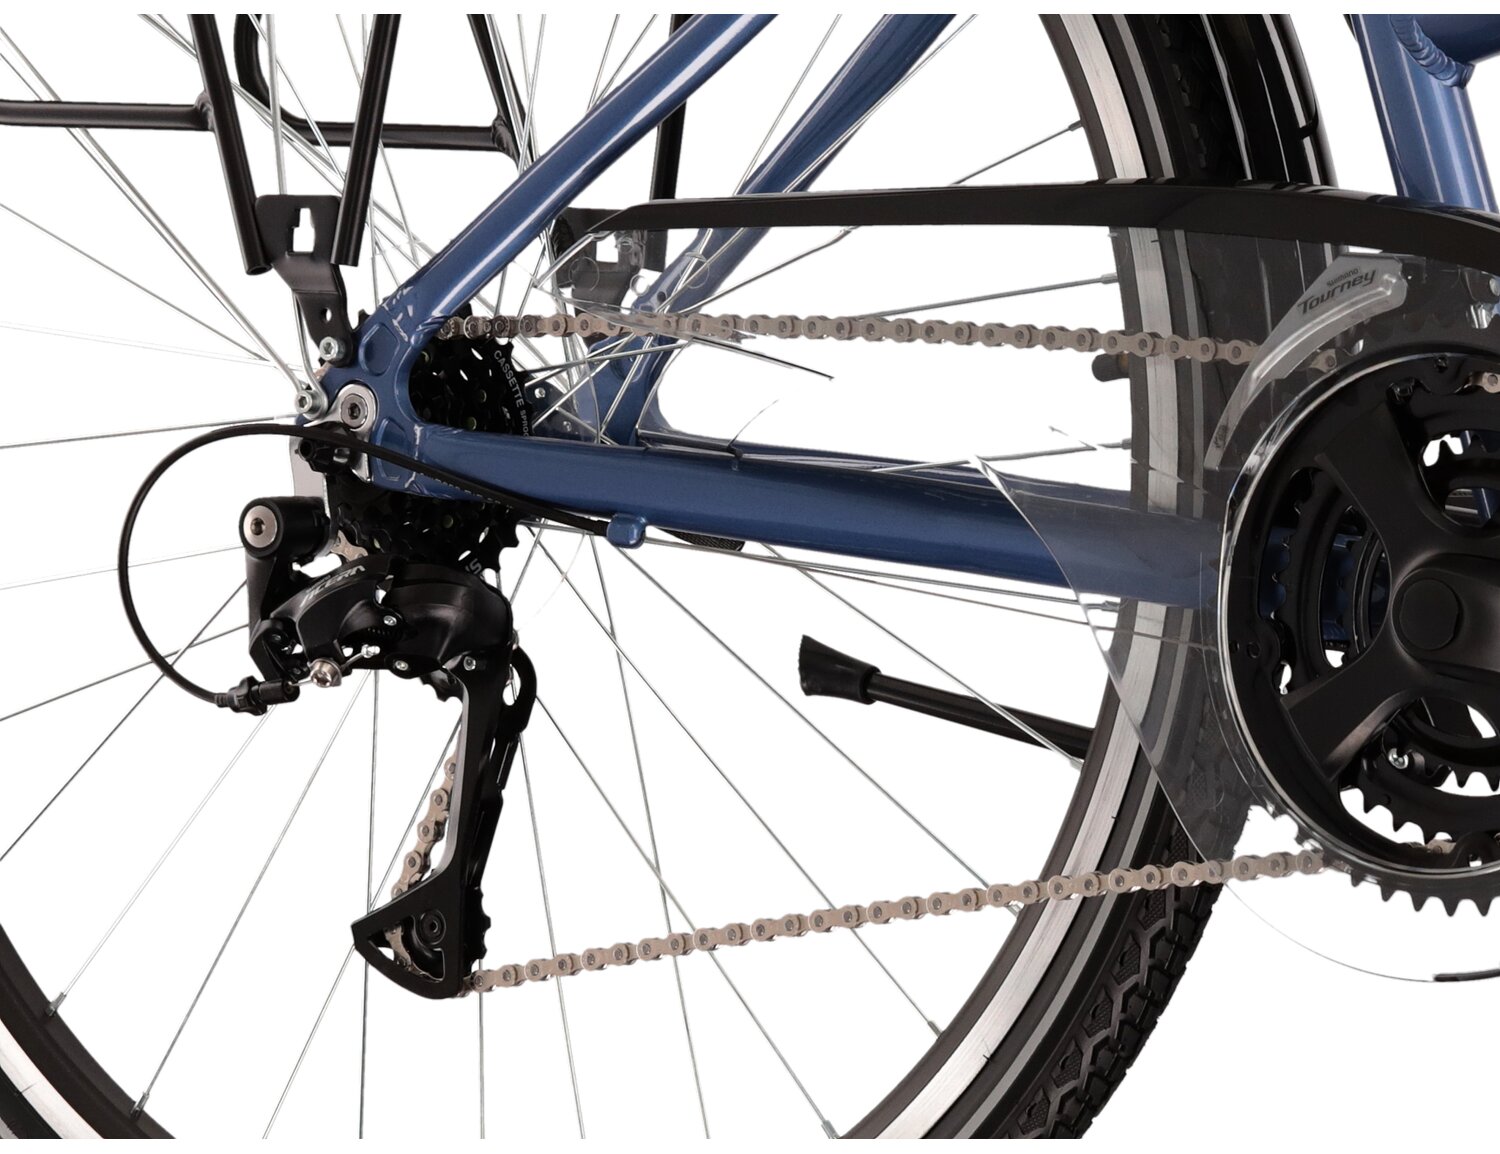  Tylna siedmiobiegowa przerzutka Shimano Acera T3000 oraz hamulce v-brake w rowerze trekkingowym damskim KROSS Trans 4.0 